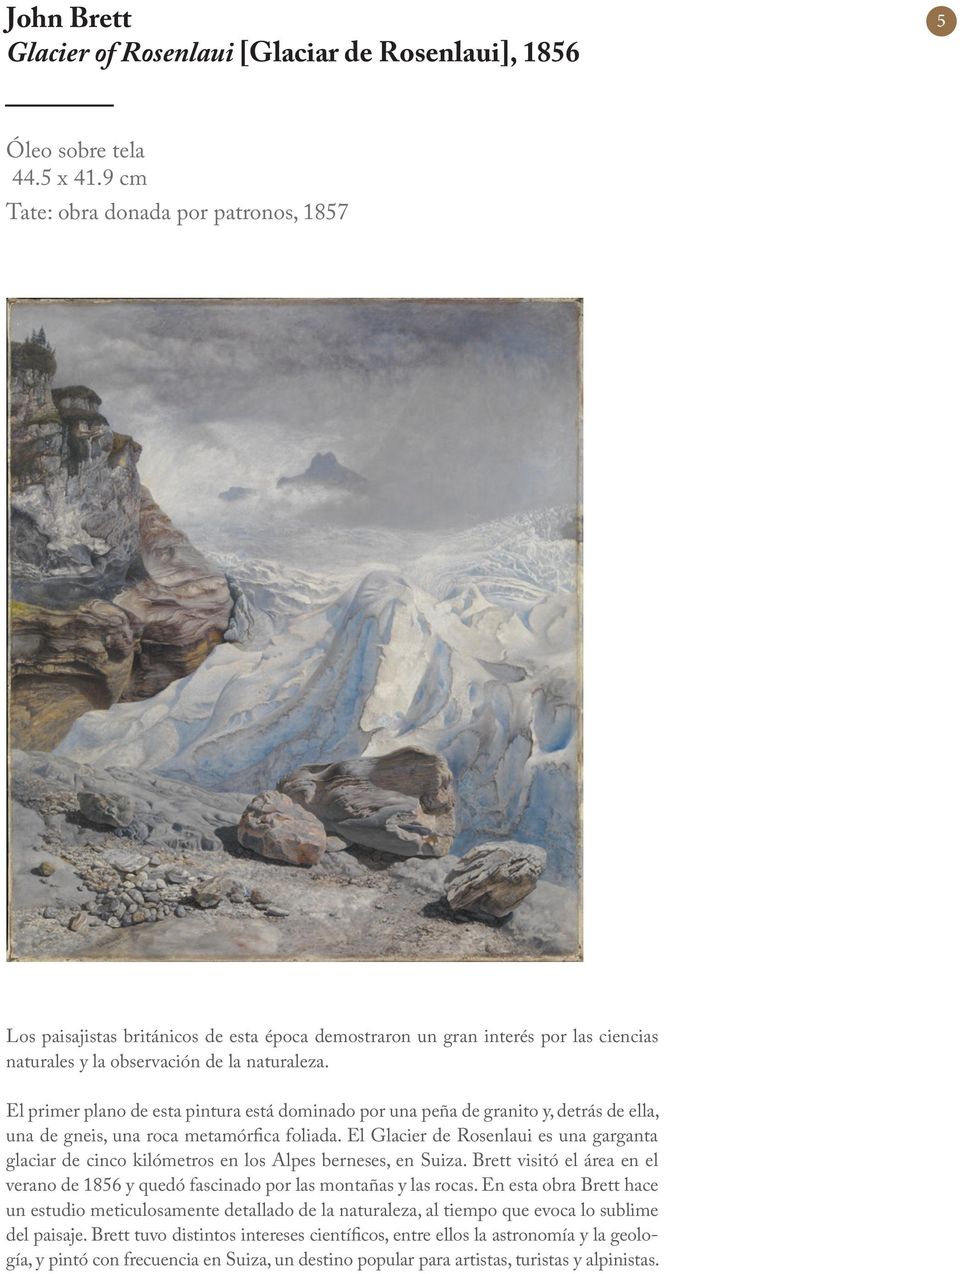 El primer plano de esta pintura está dominado por una peña de granito y, detrás de ella, una de gneis, una roca metamórfica foliada.